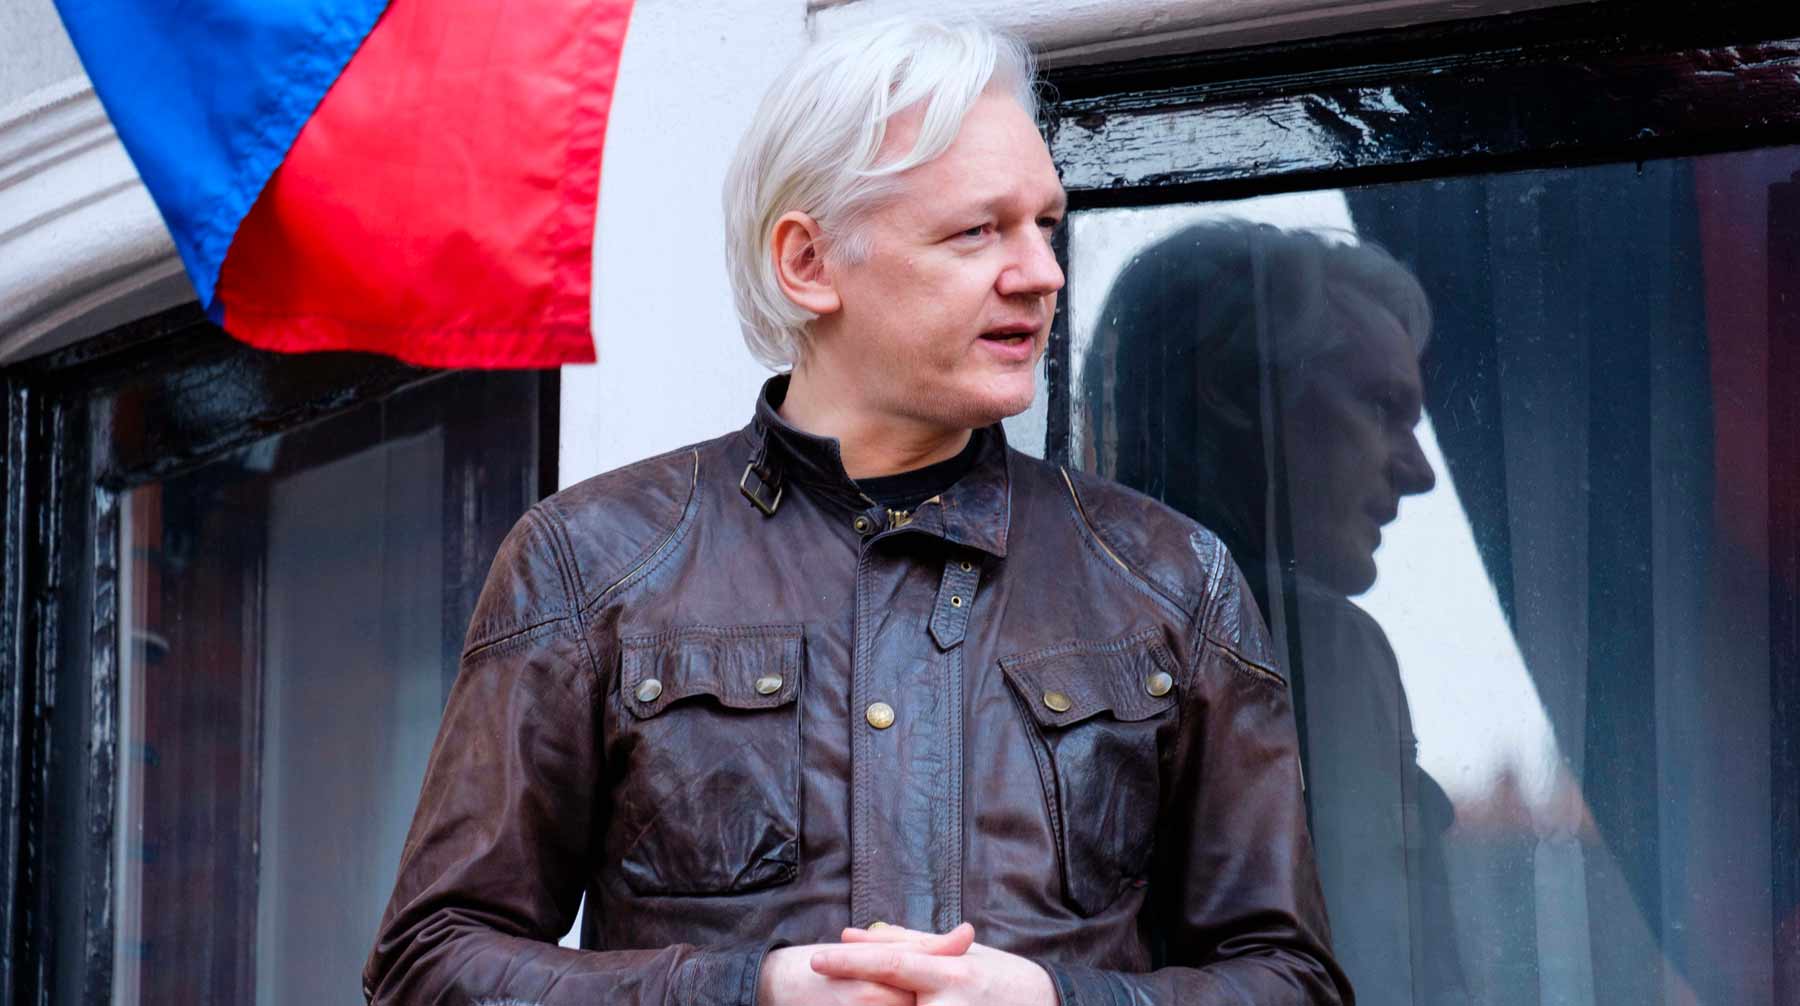 Сумма в один миллион долларов должна покрыть затраты основателя Wikileaks на юристов из Швеции, Великобритании и Эквадора undefined